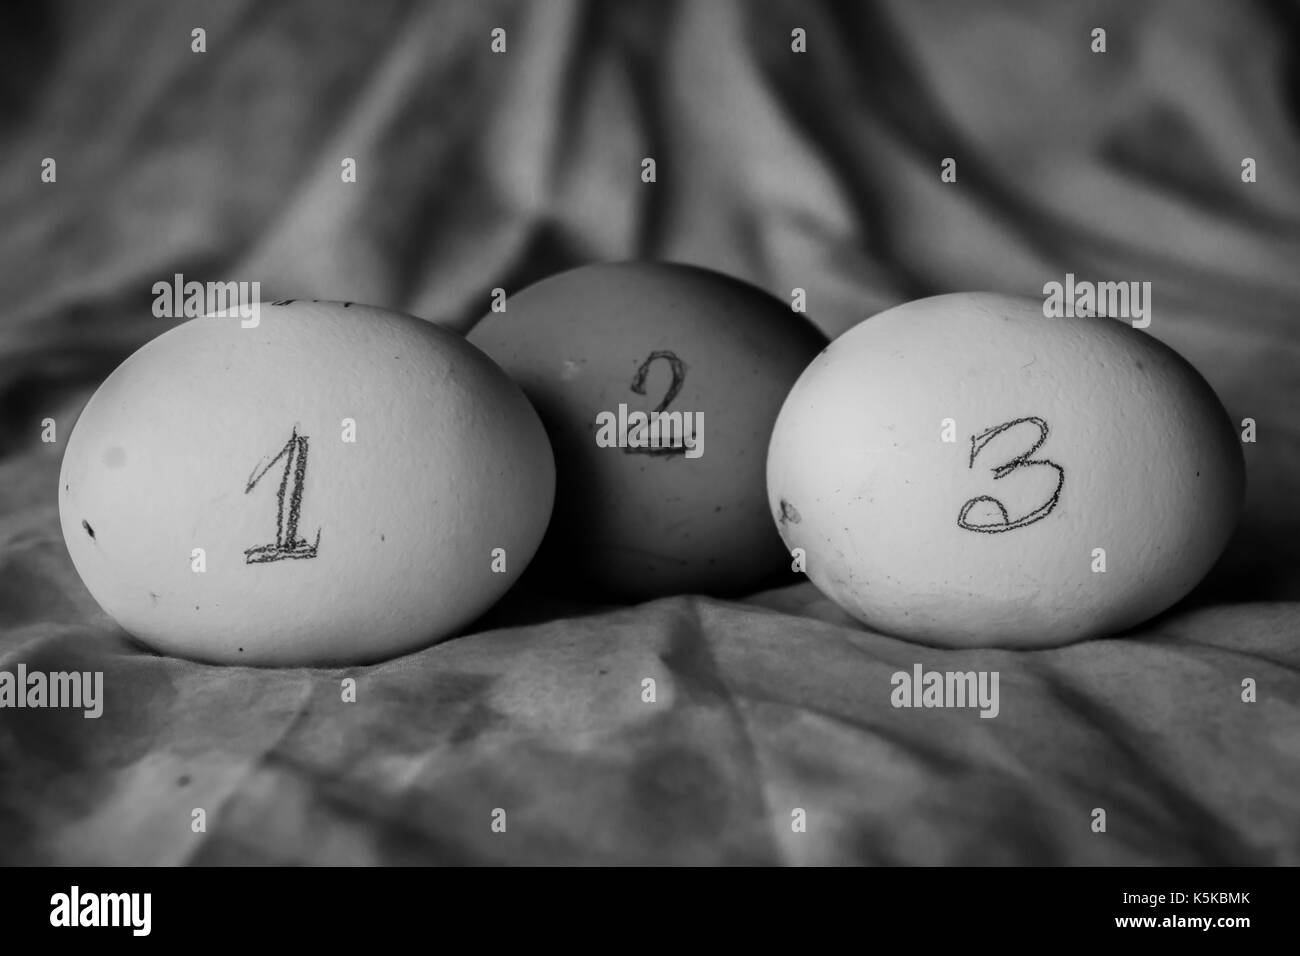 Dir die Eier in eine numerische Sequenz mit Nummer auf diese schriftlichen gehalten. Stockfoto